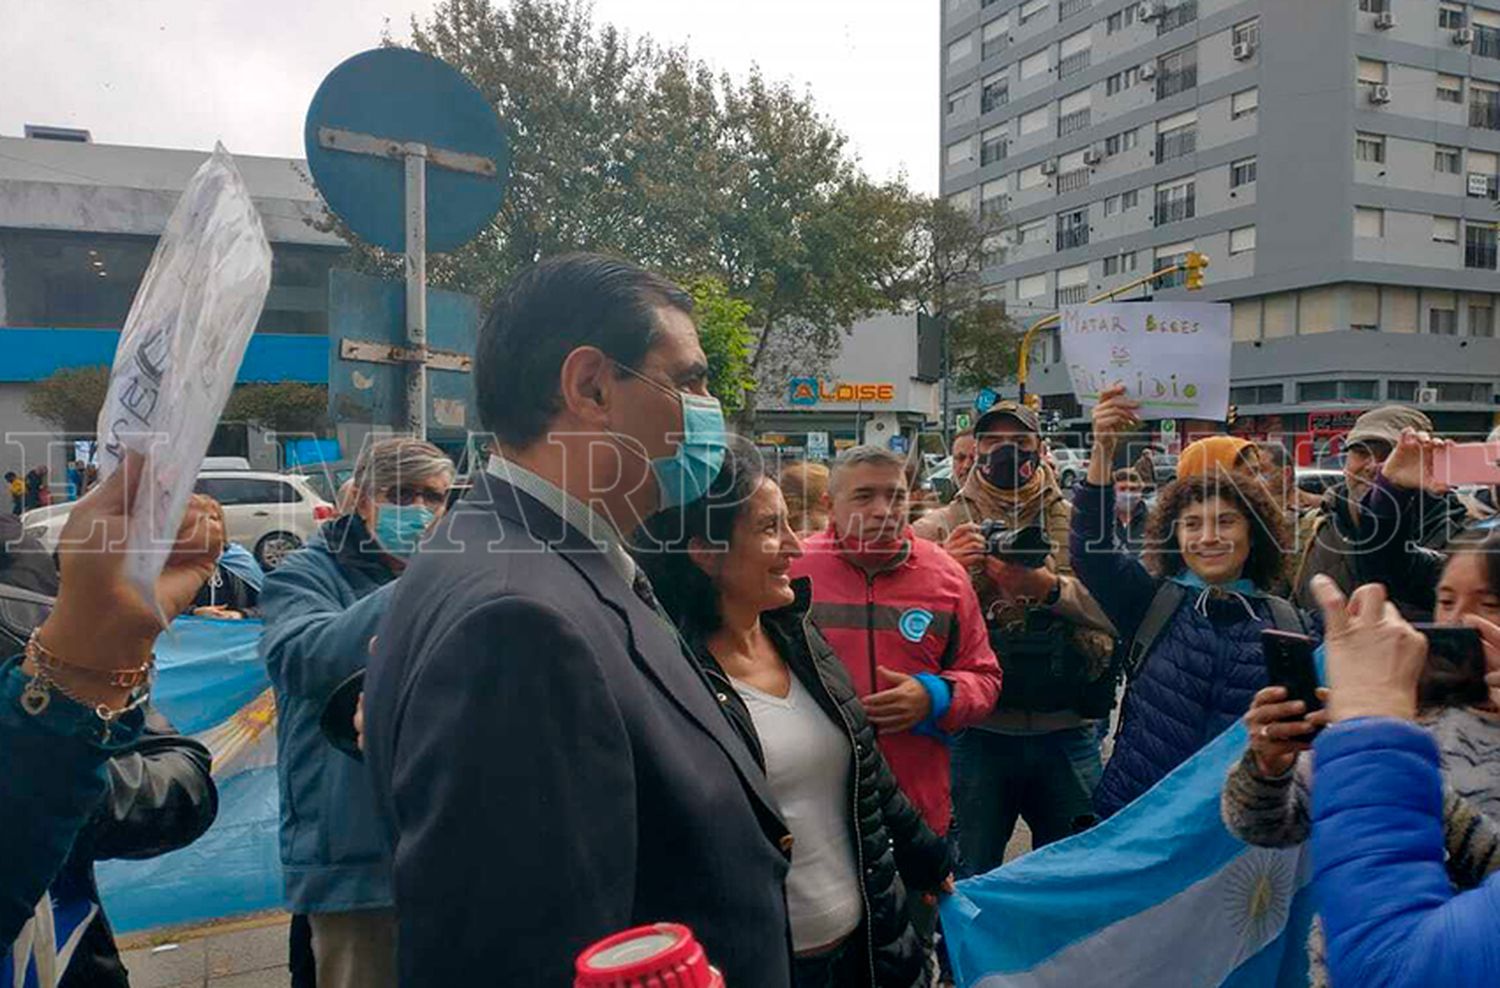 El juez López salió a saludar: "La mayoría del pueblo argentino defiende la vida"